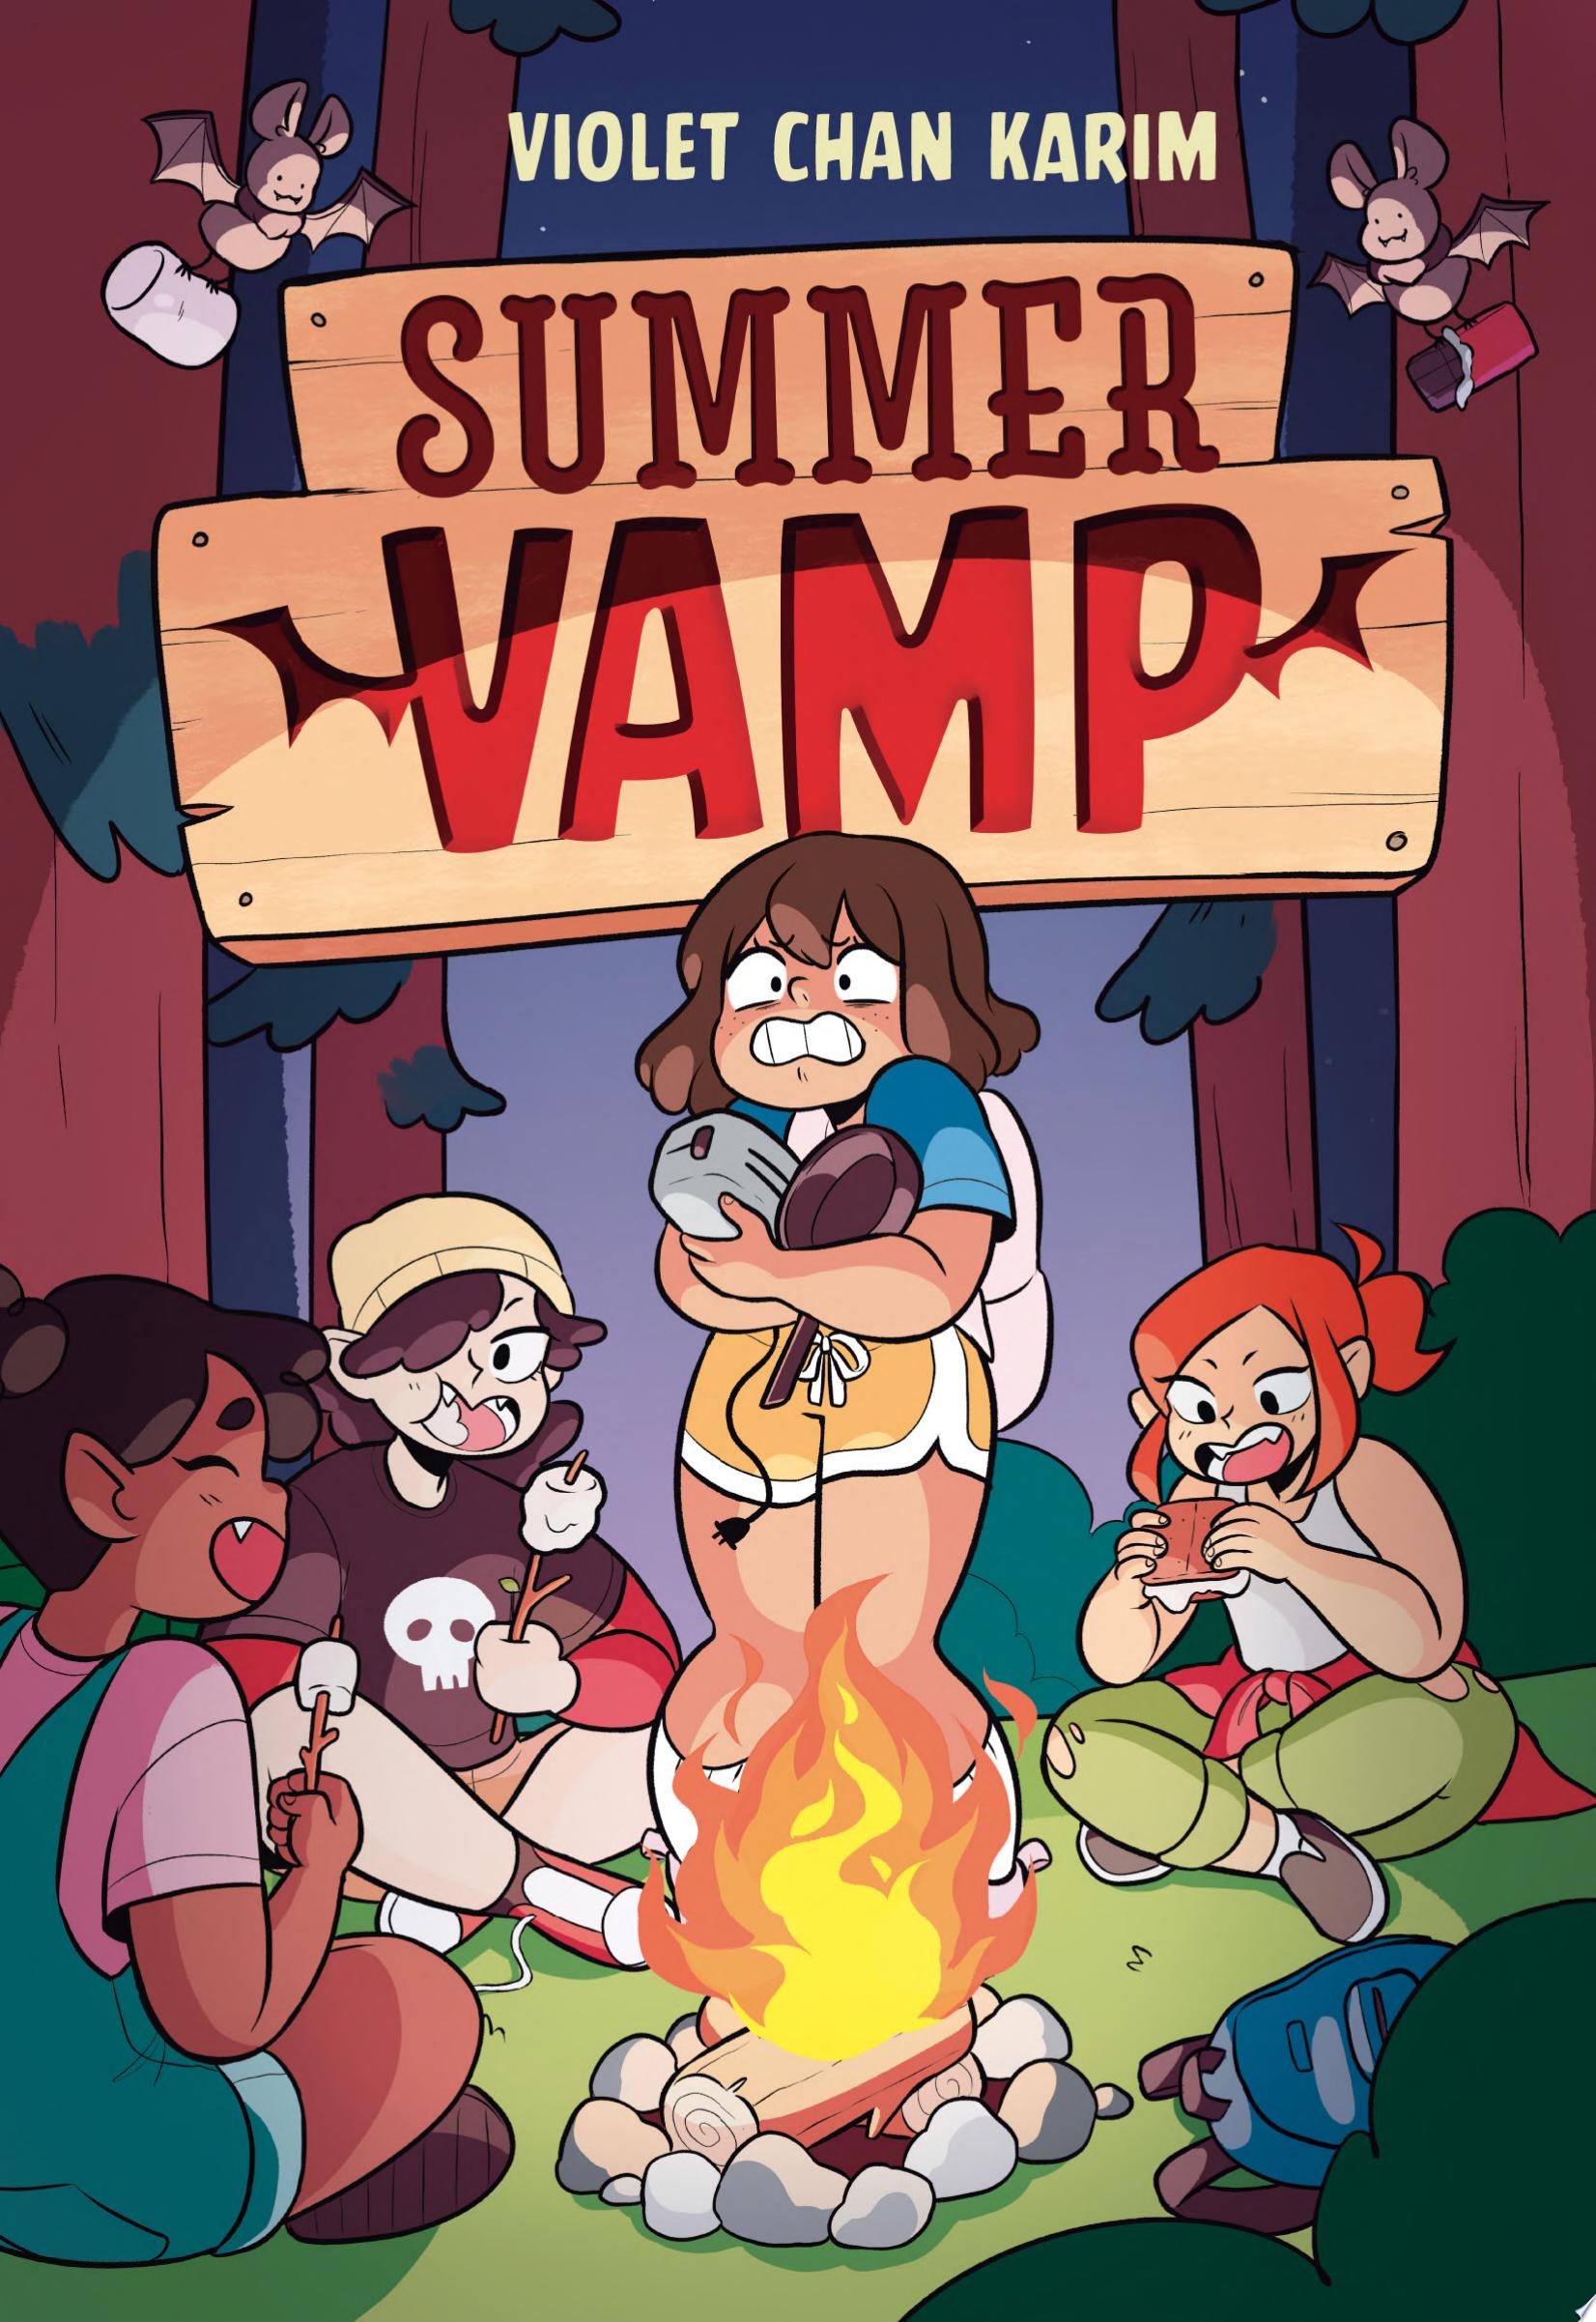 Image for "Summer Vamp"